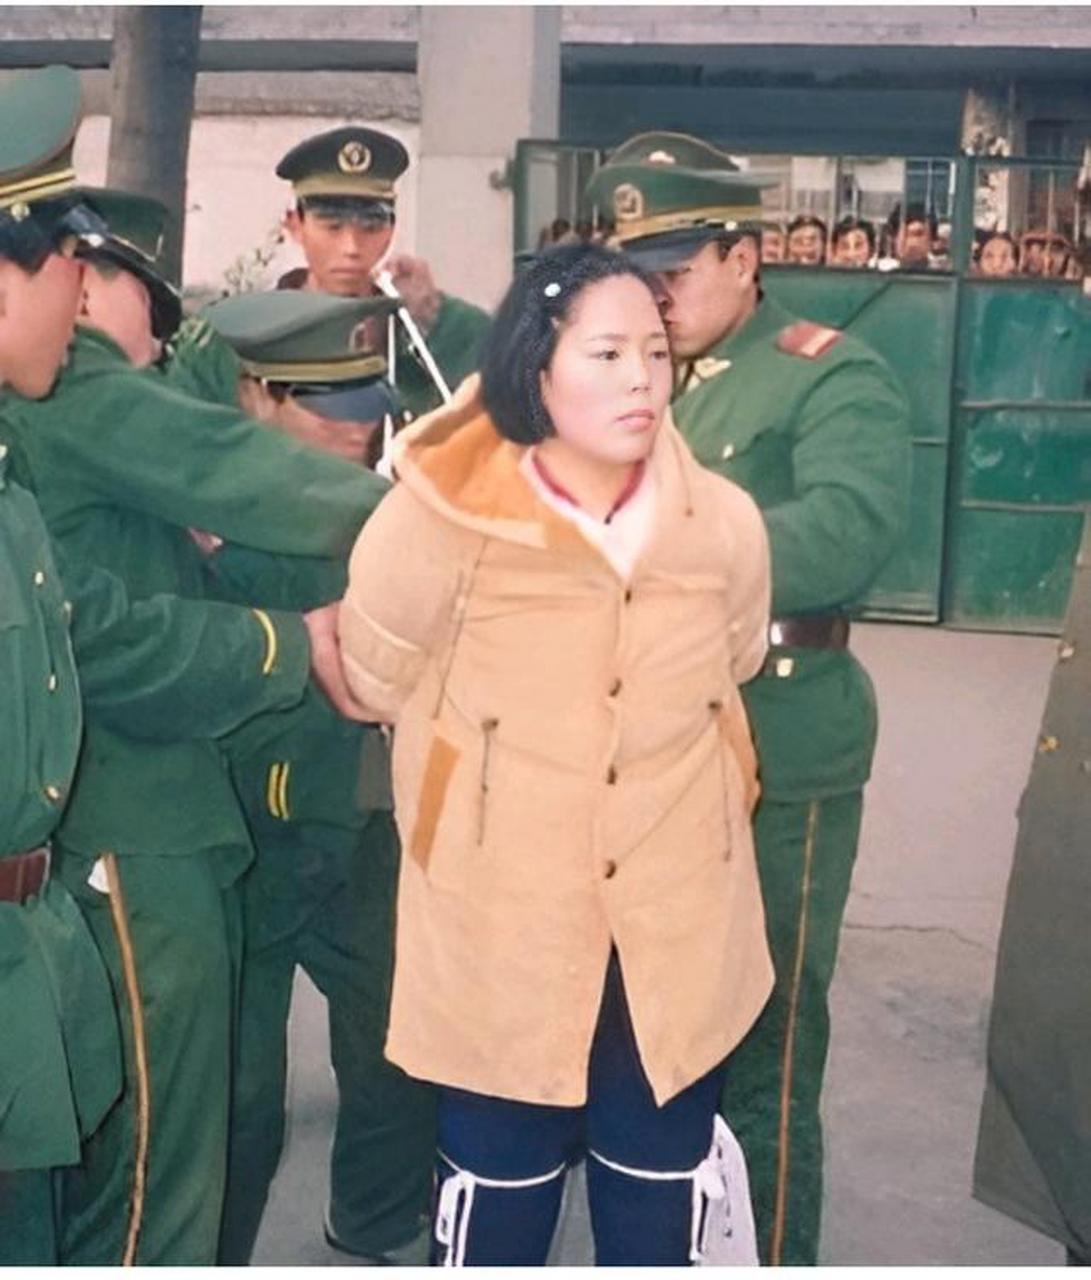 1995年,女犯苏小敏将被押赴刑场,这个年轻漂亮的女孩,本来有大把美好